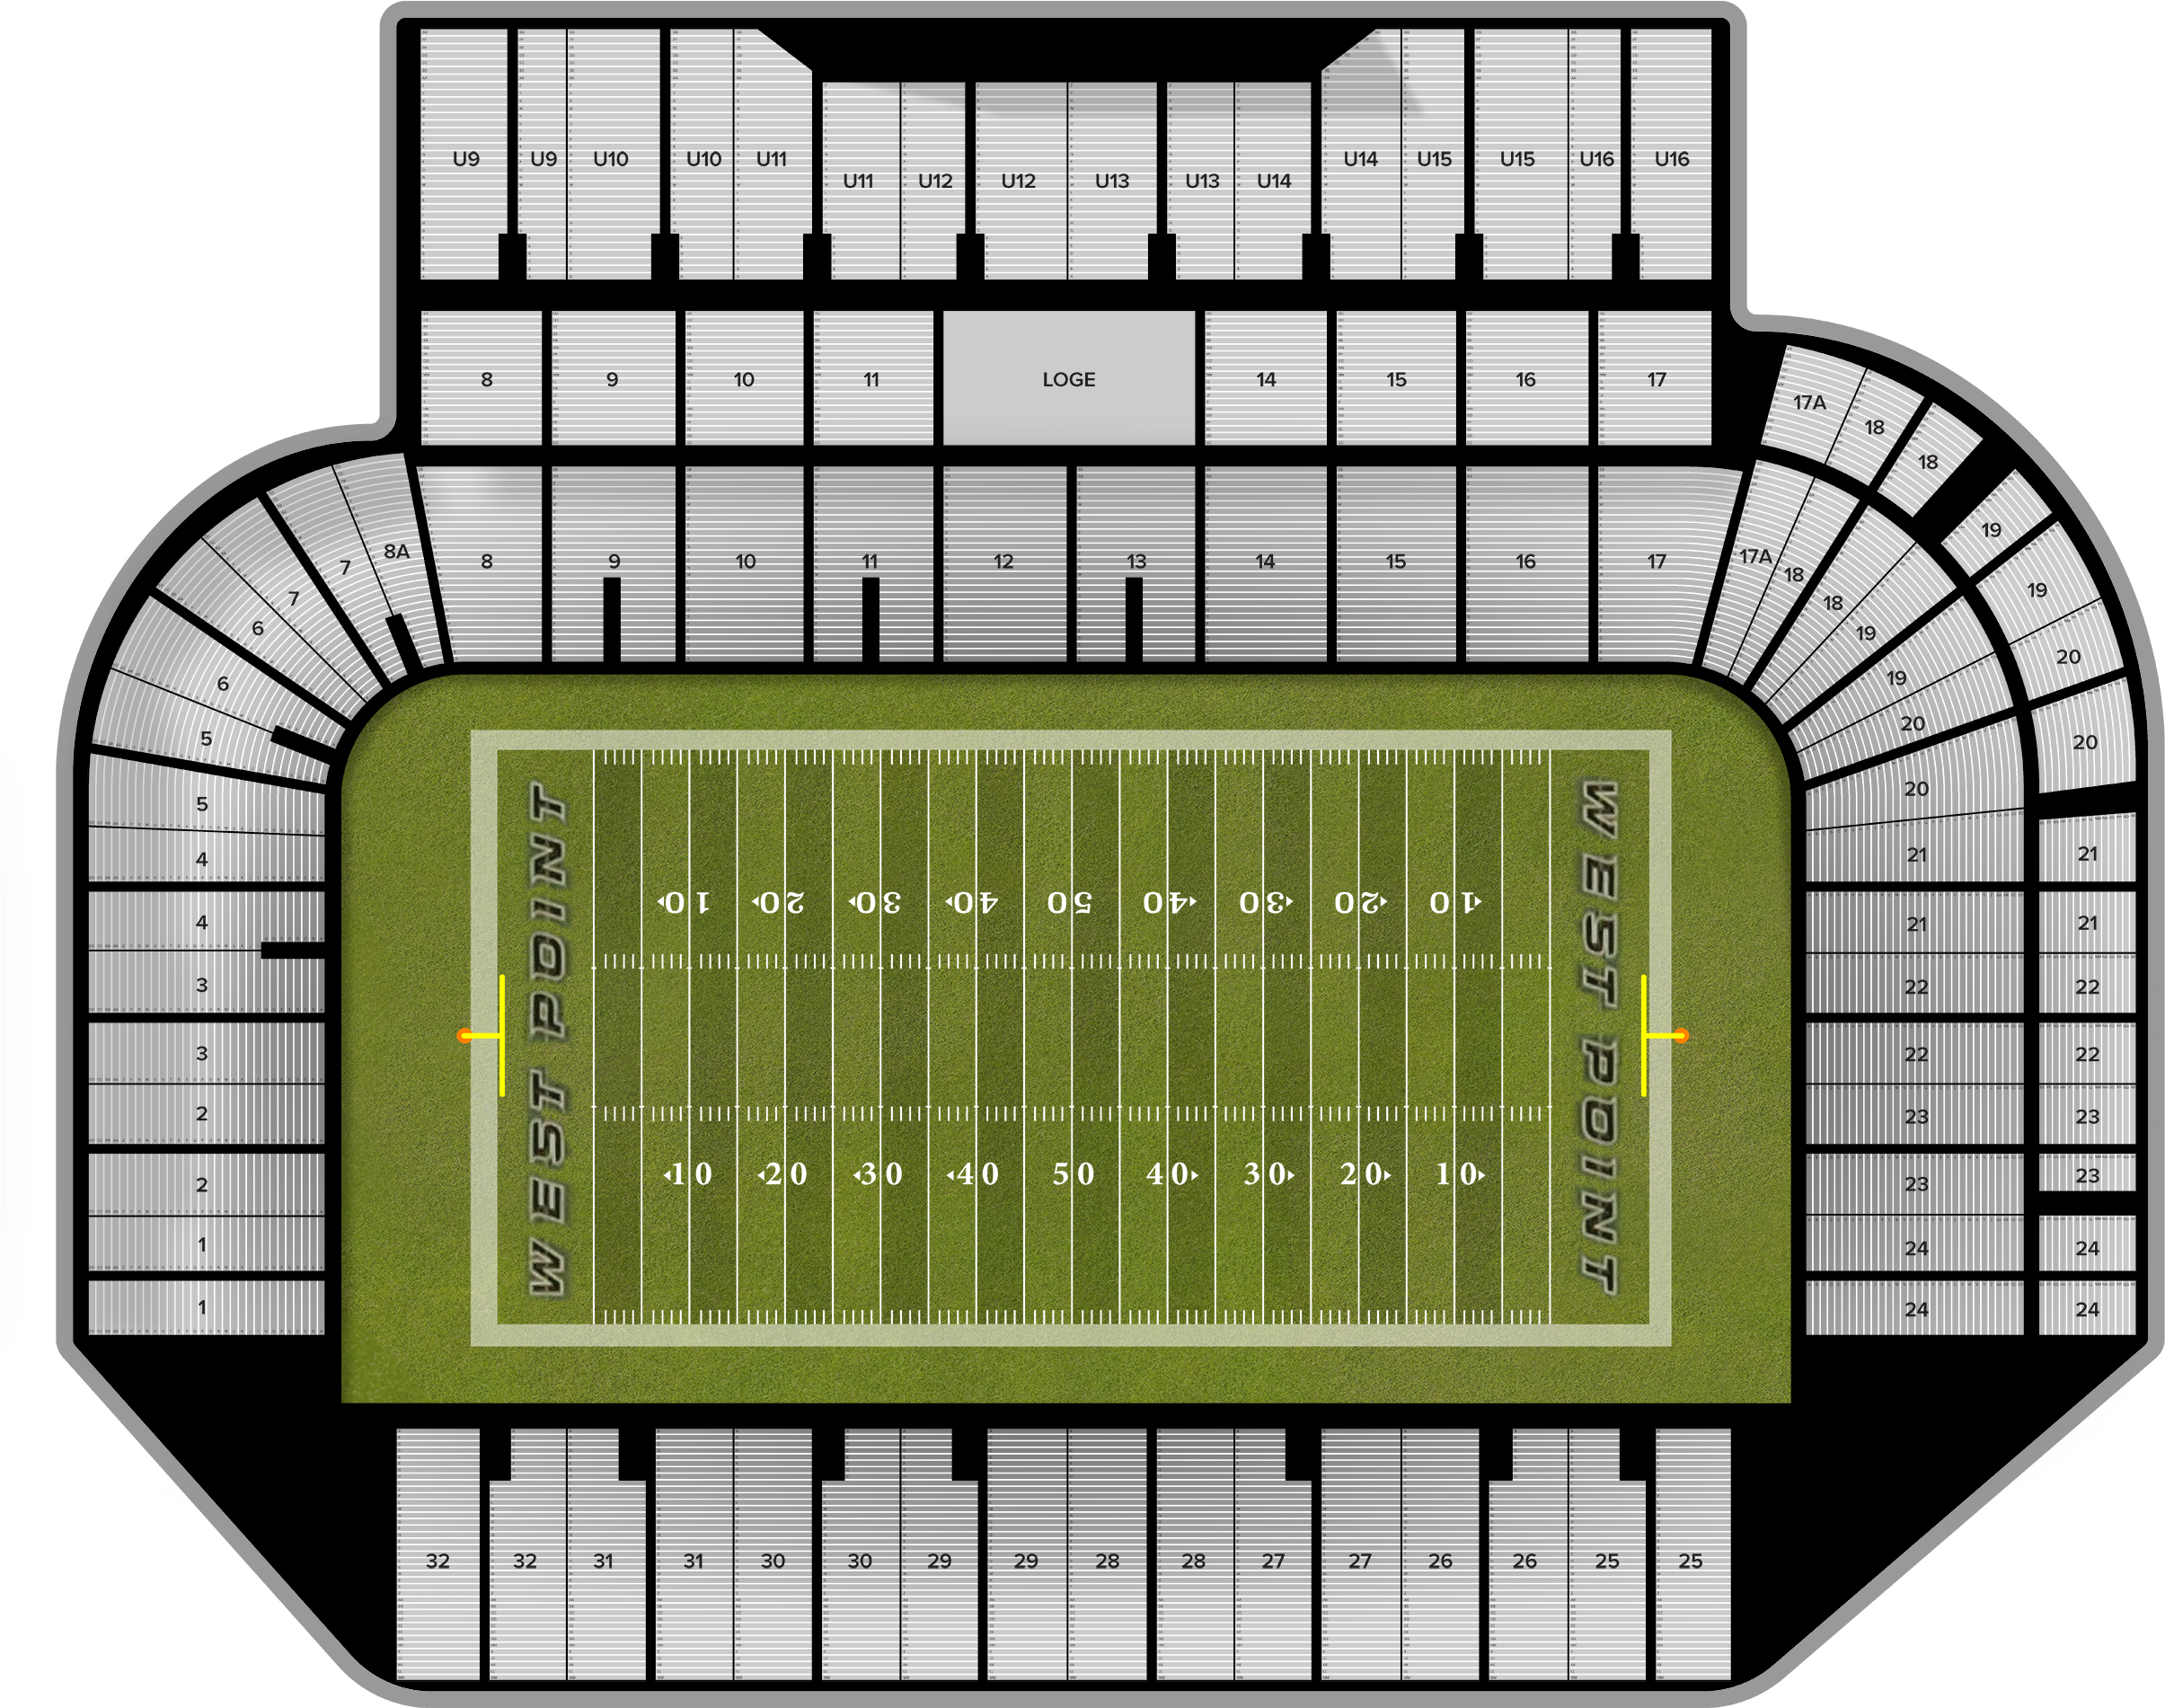 Michie stadium seating chart